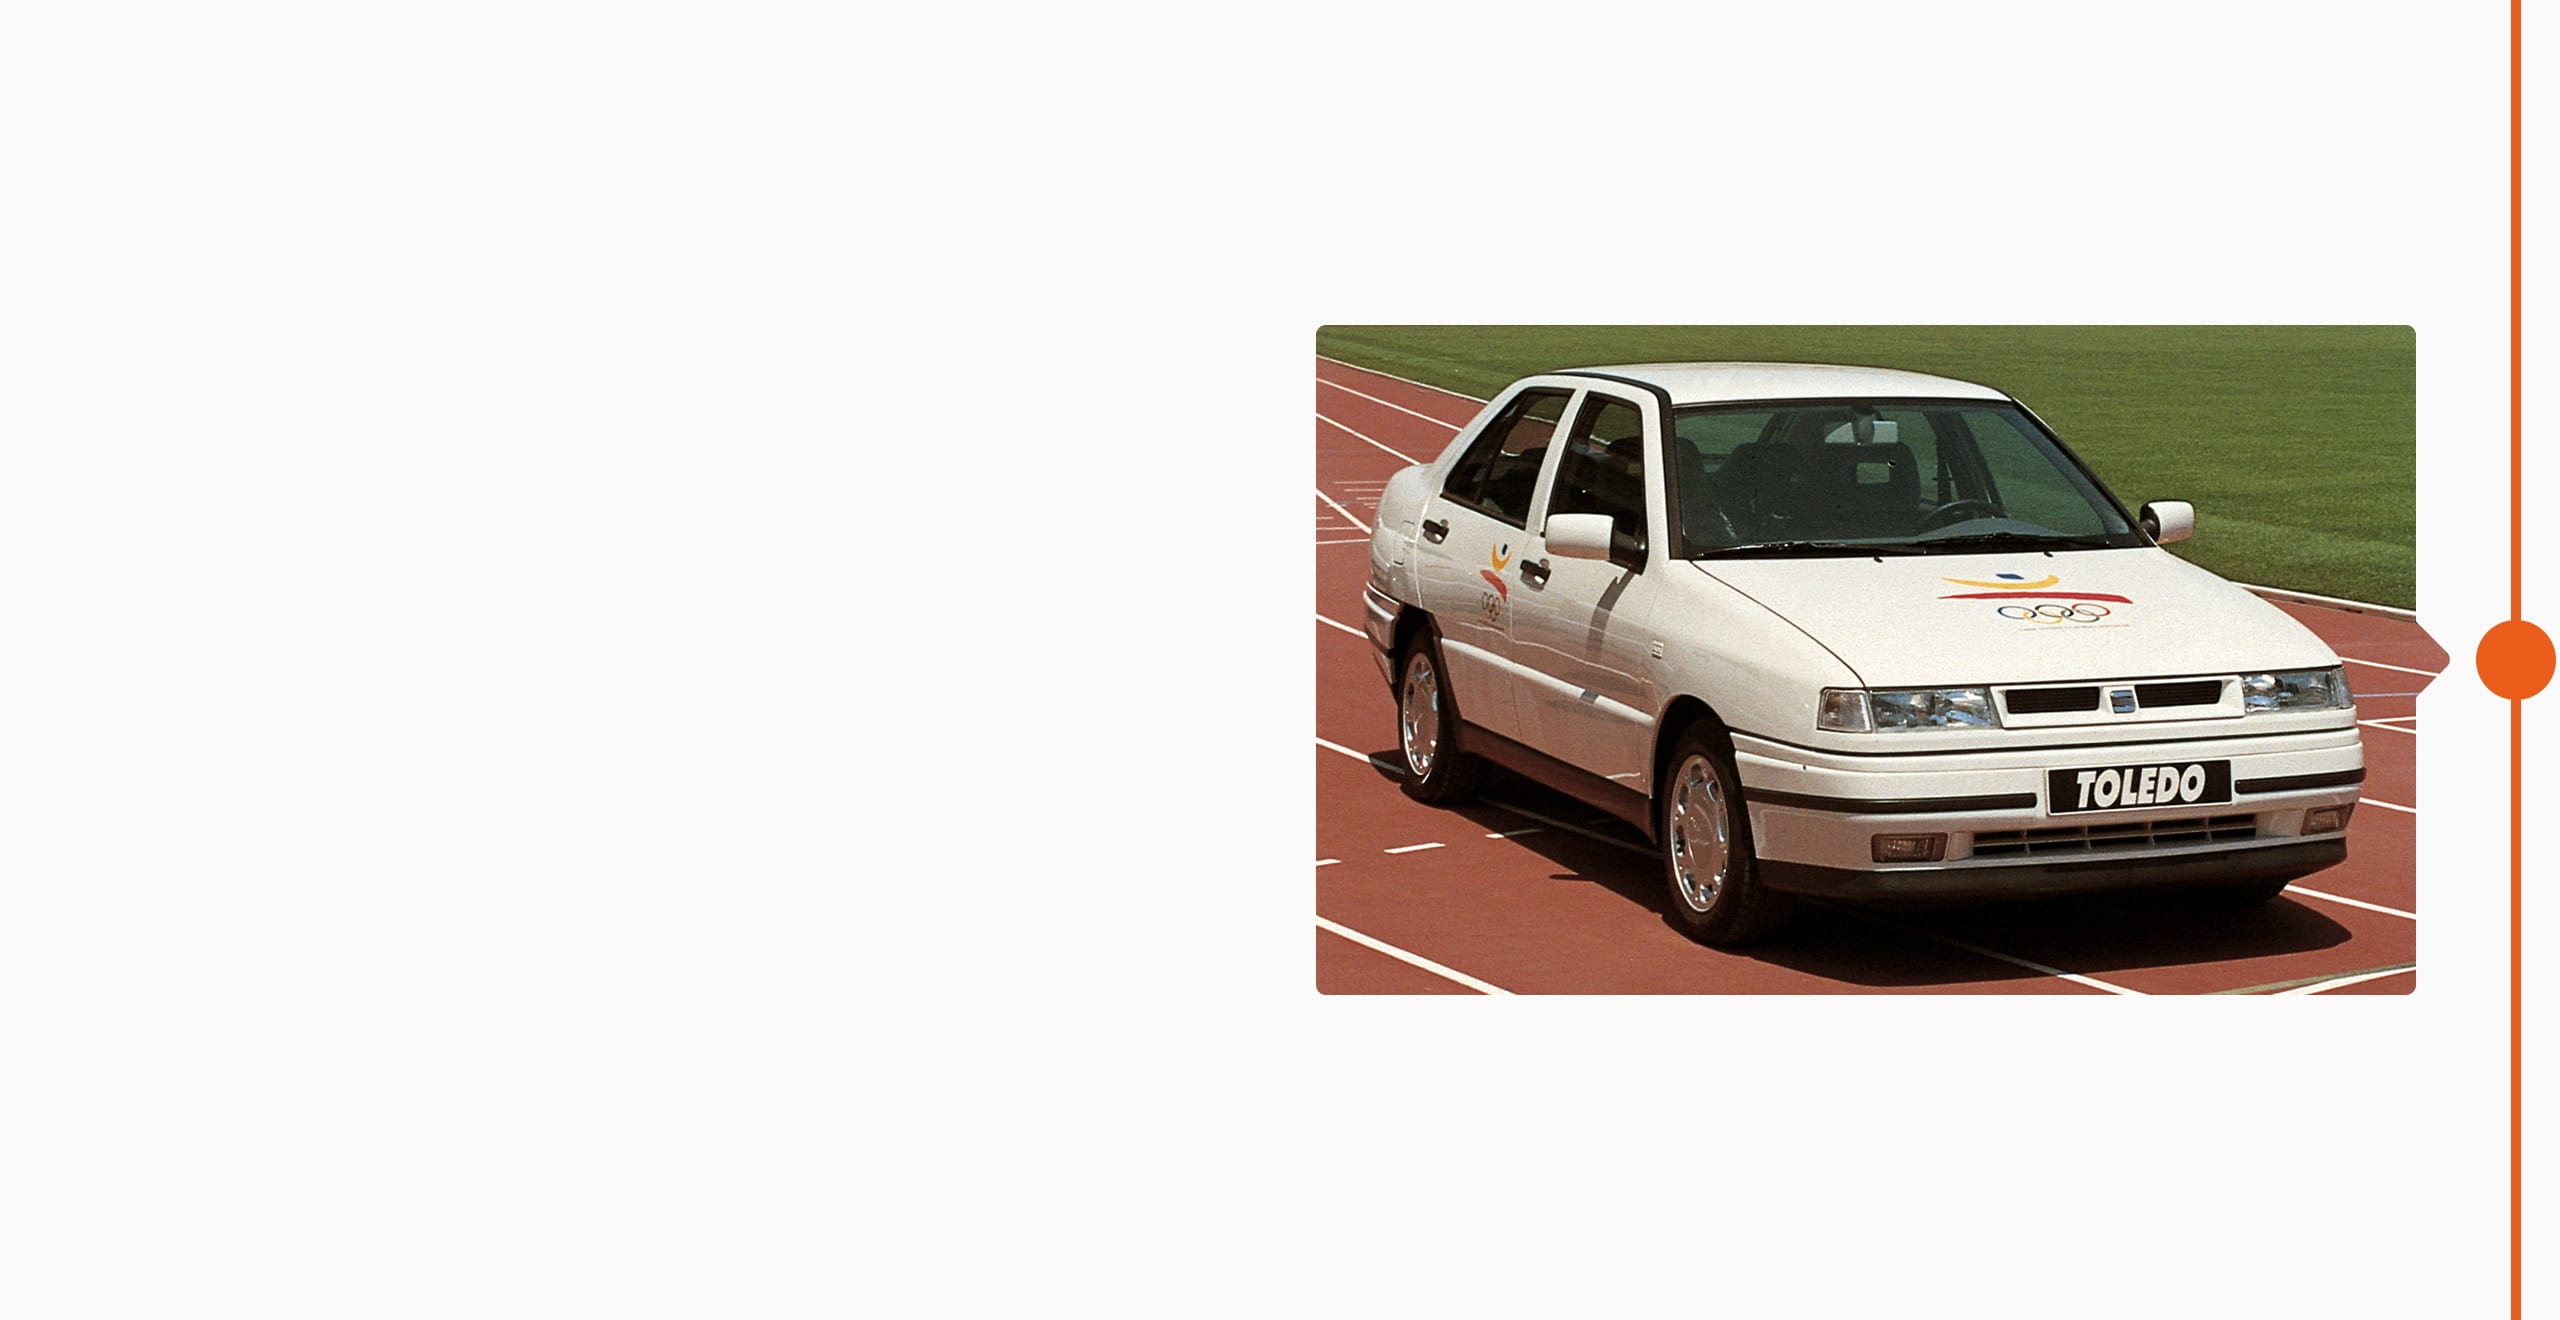 SEAT historia de la marca 1992 - parter de los Juegos Olímpicos de 1992 SEAT Toledo en la pista de atletismo